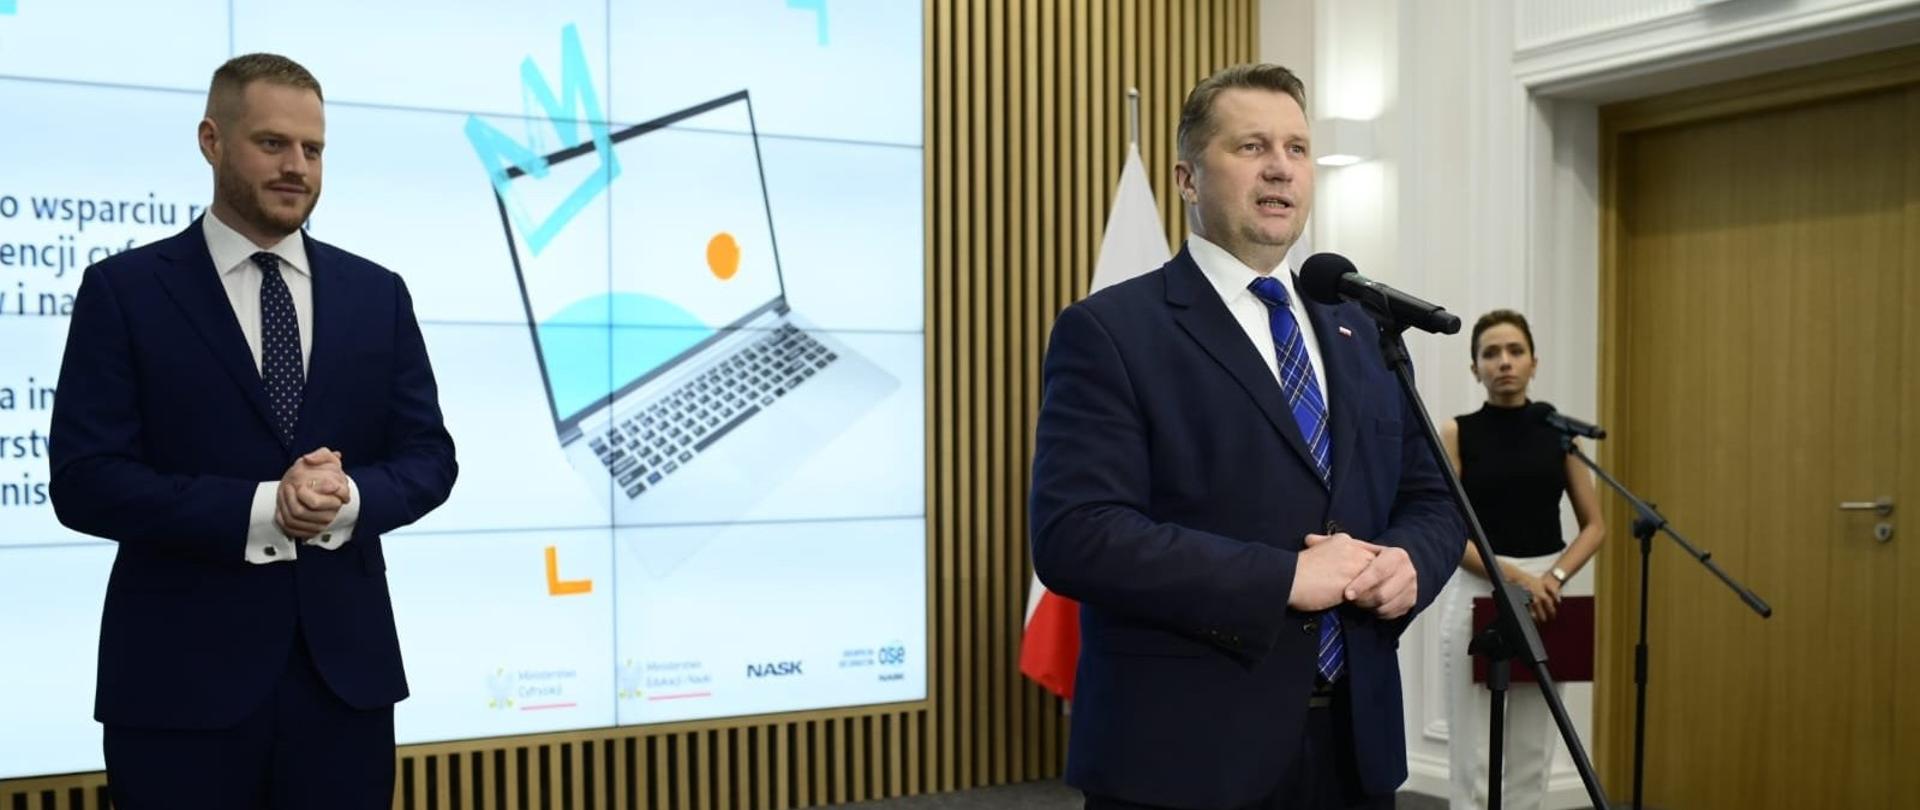 Minister Czarnek stoi przy mikrofonie obok niego po lewej mężczyzna w garniturze. W tle widać kobietę przy mikrofonie i telebim.